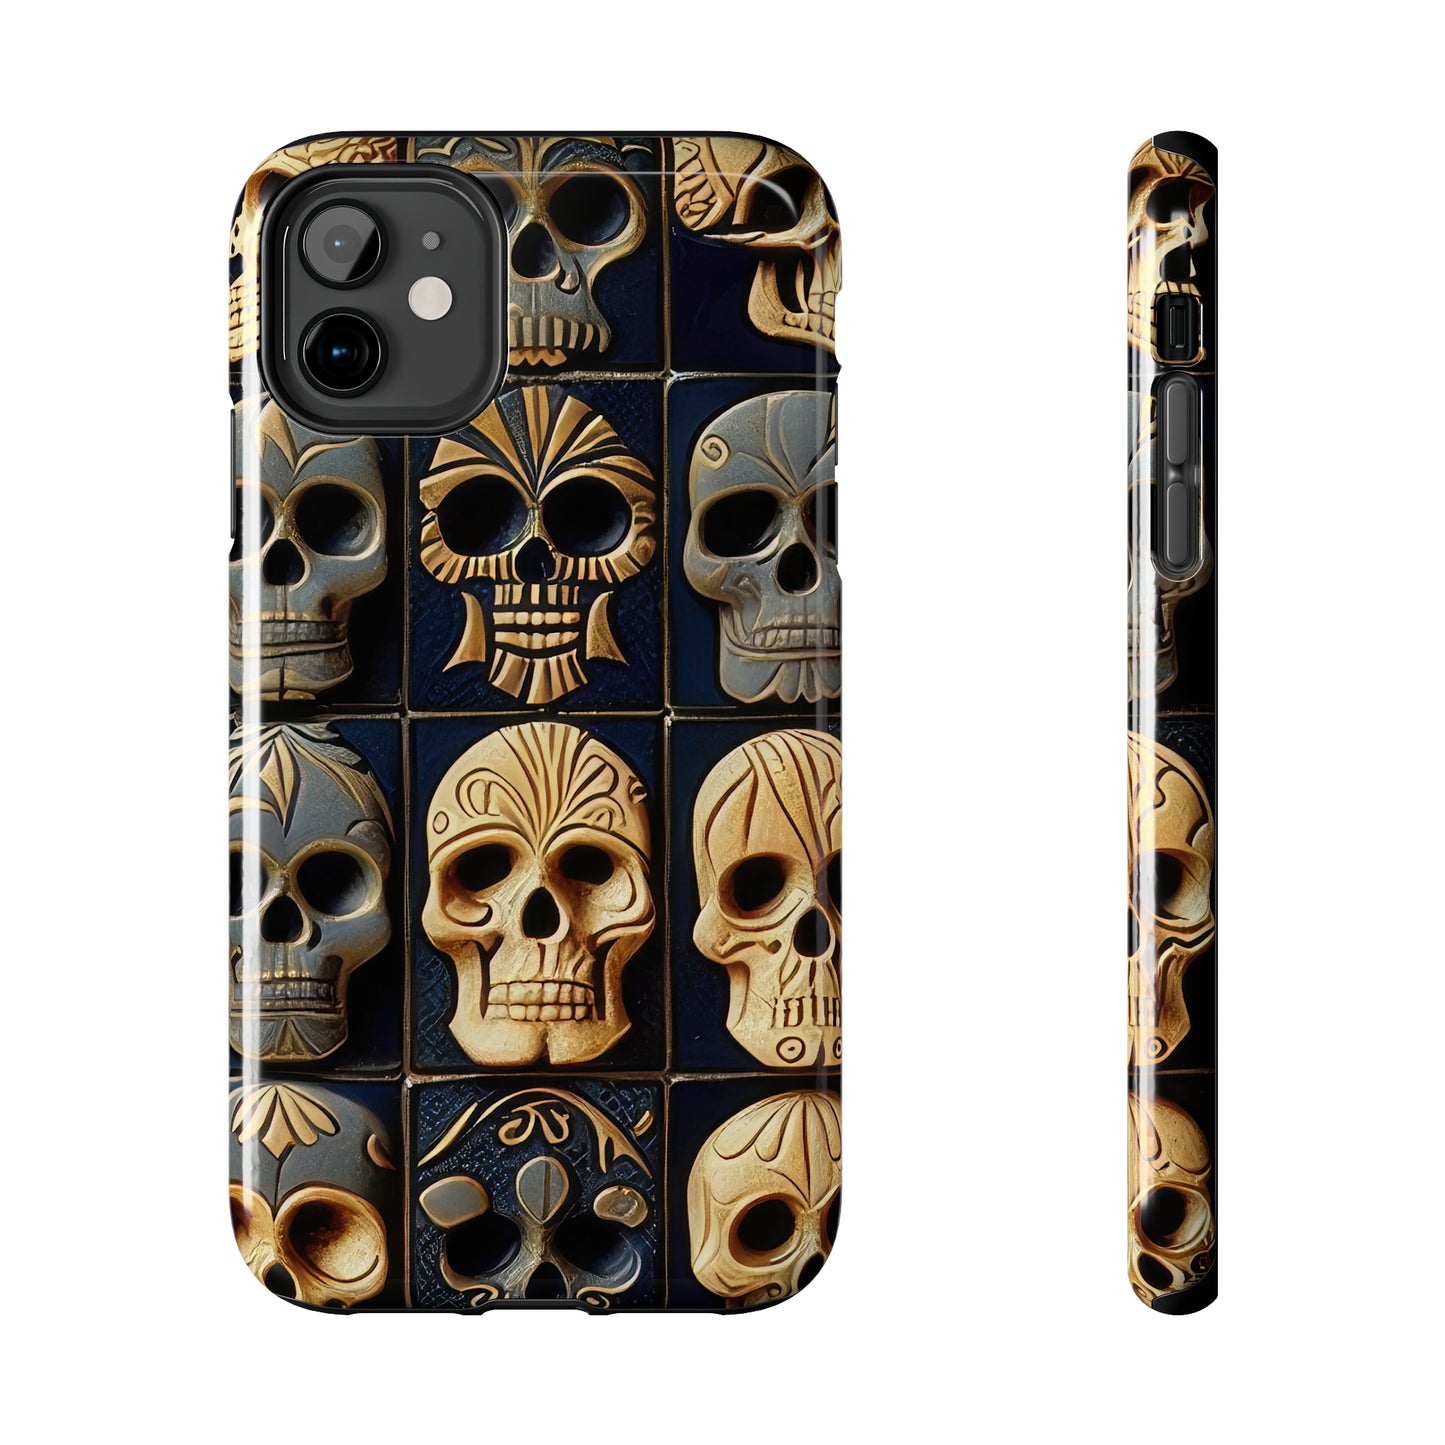 Metallic Chrome Skulls and classic Designed 17 Tough Phone Cases